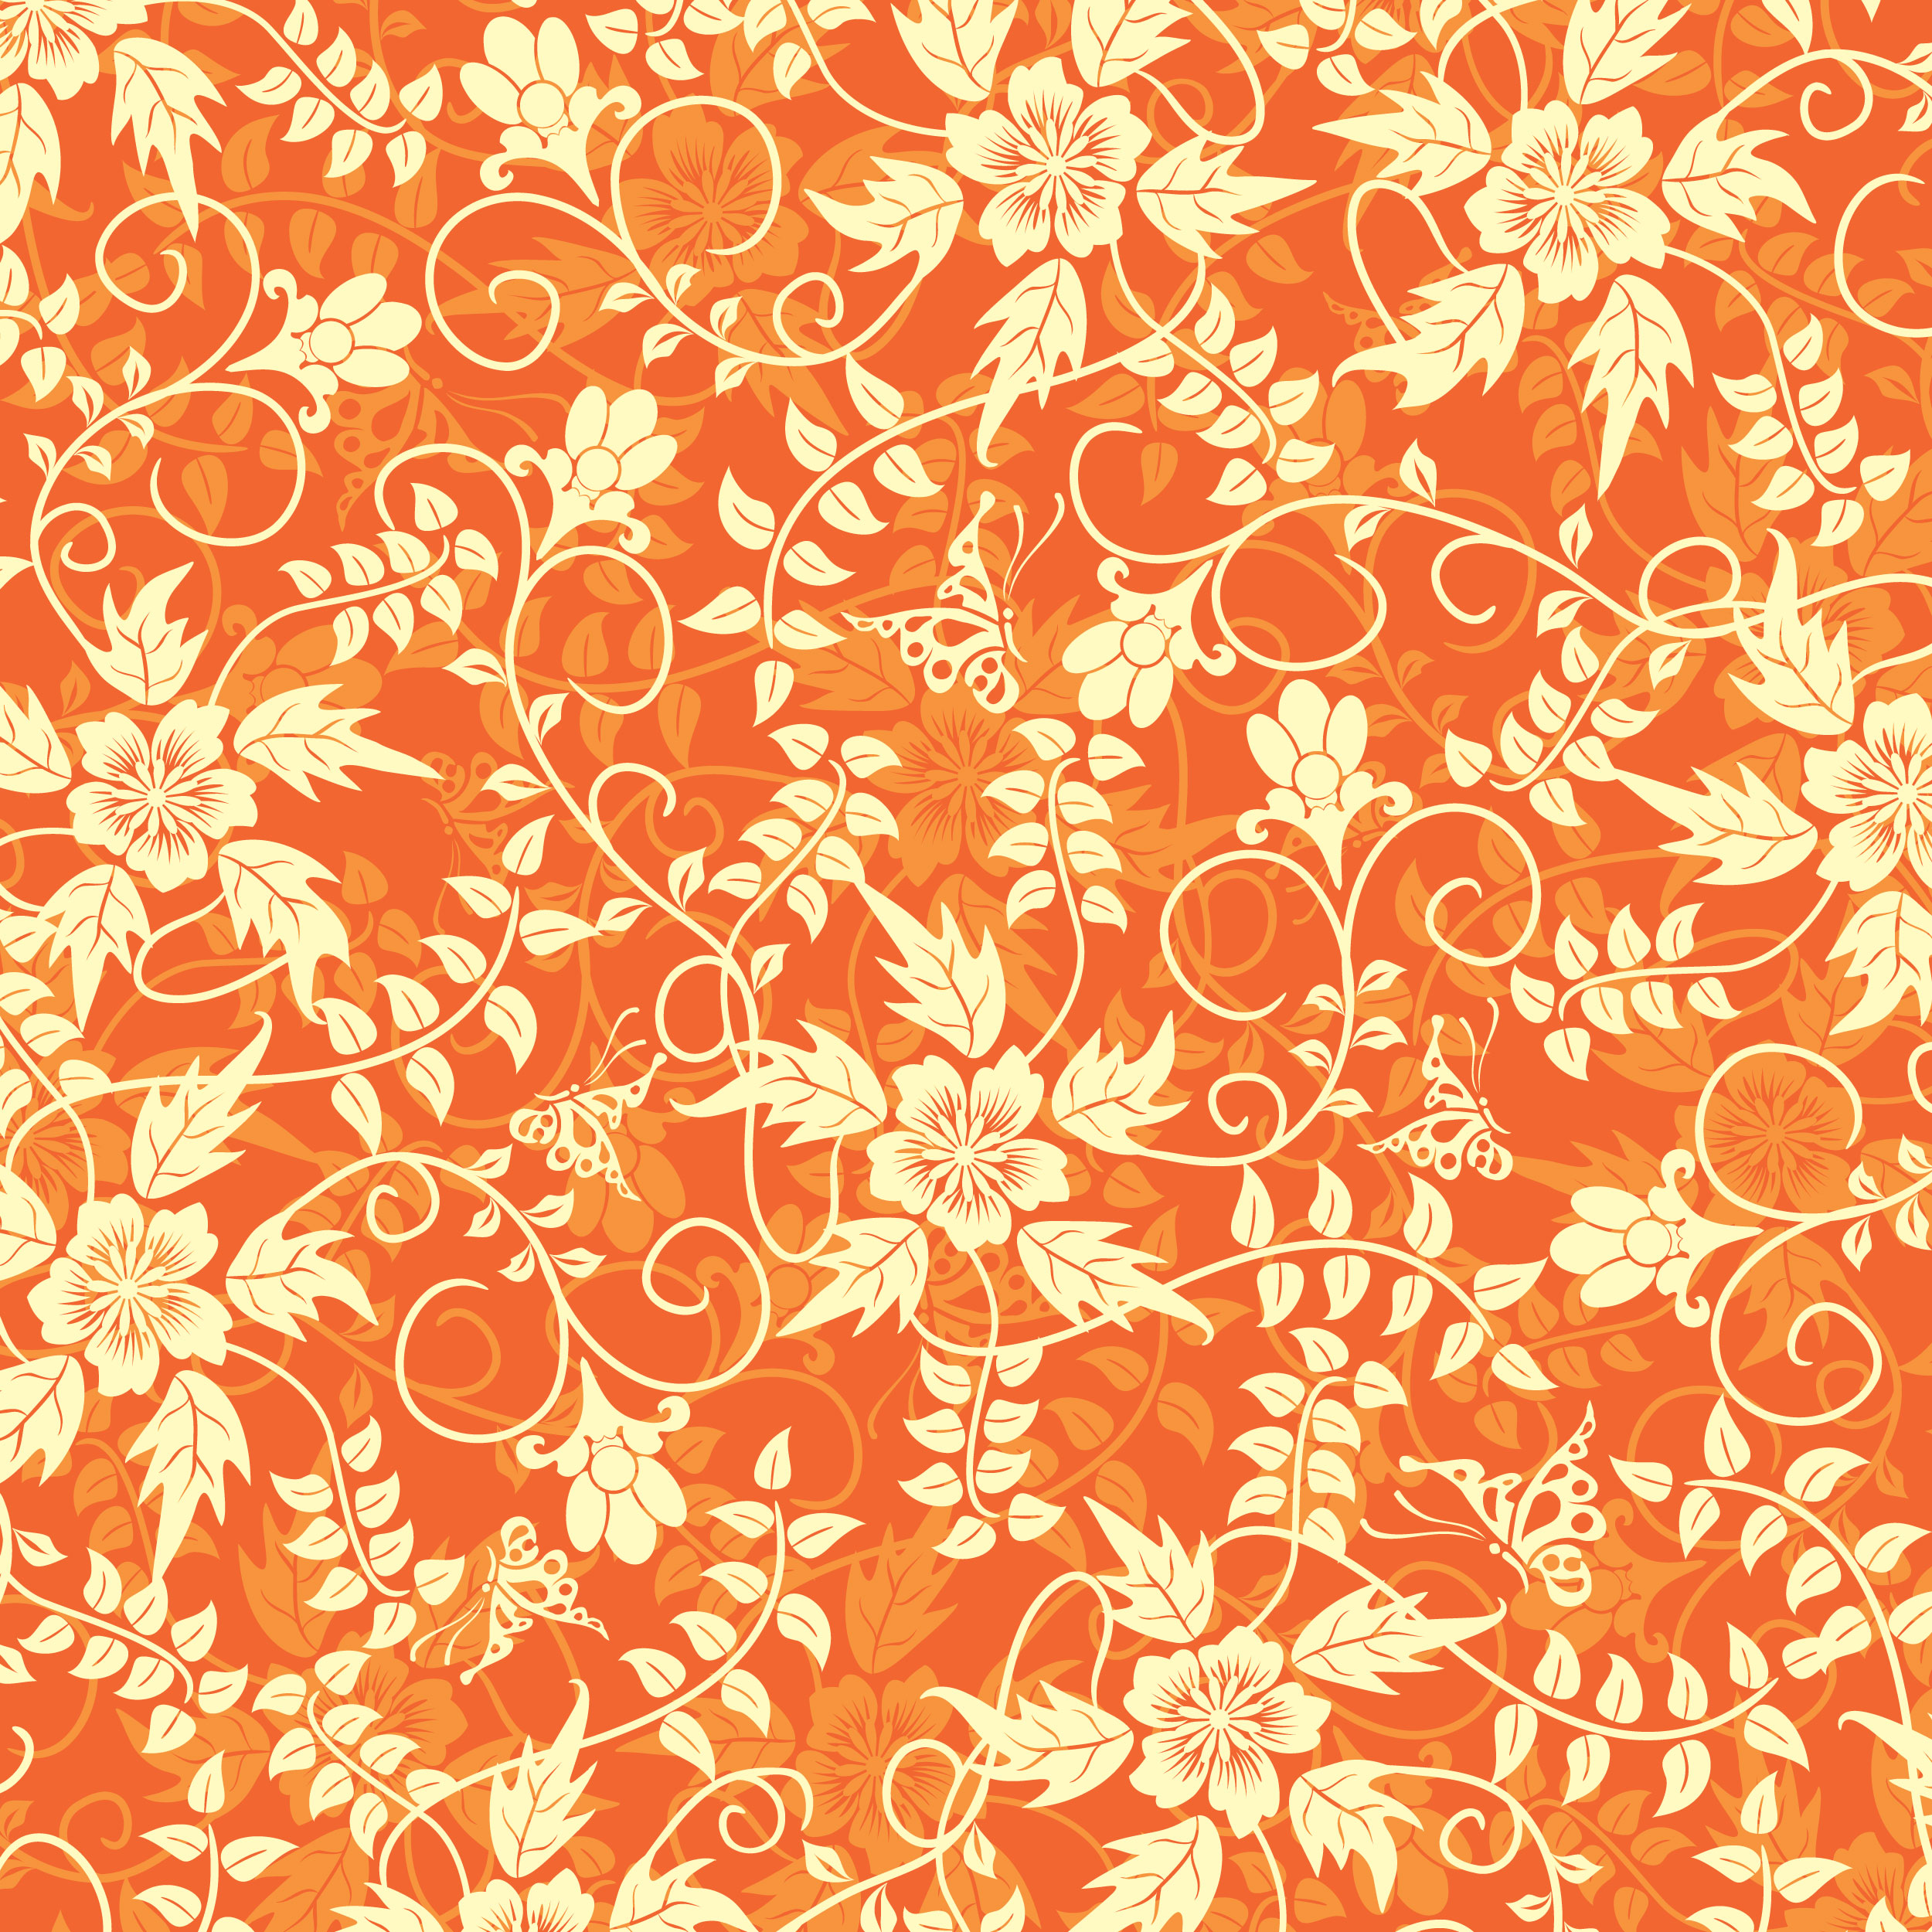 オレンジ色の花のイラスト フリー素材 壁紙 背景no 216 オレンジ 茎葉 つる